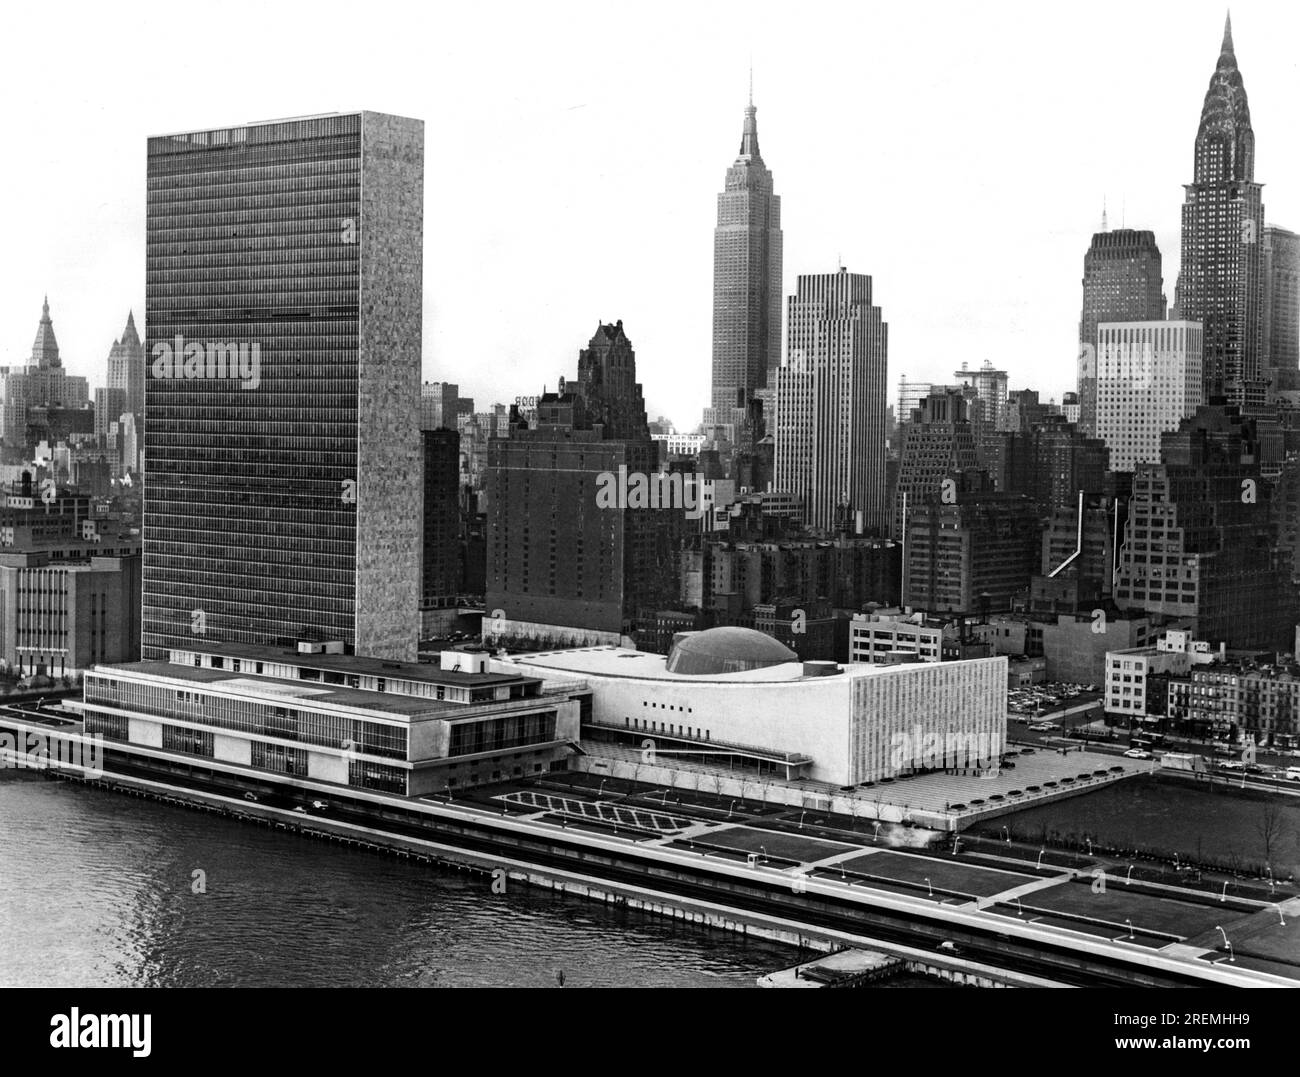 New York, New York: November 1953 Mid-town Manhattan, einschließlich des United Nations Building auf der linken und vorderen Seite, wird in voller Pracht gezeigt mit diesem Foto, das aus einem Flugzeug gemacht wurde, das entlang des East River fliegt. Das Chrysler Building ist das hohe Gebäude auf der rechten Seite, während sich das Empire State Building in der Mitte befindet. Stockfoto